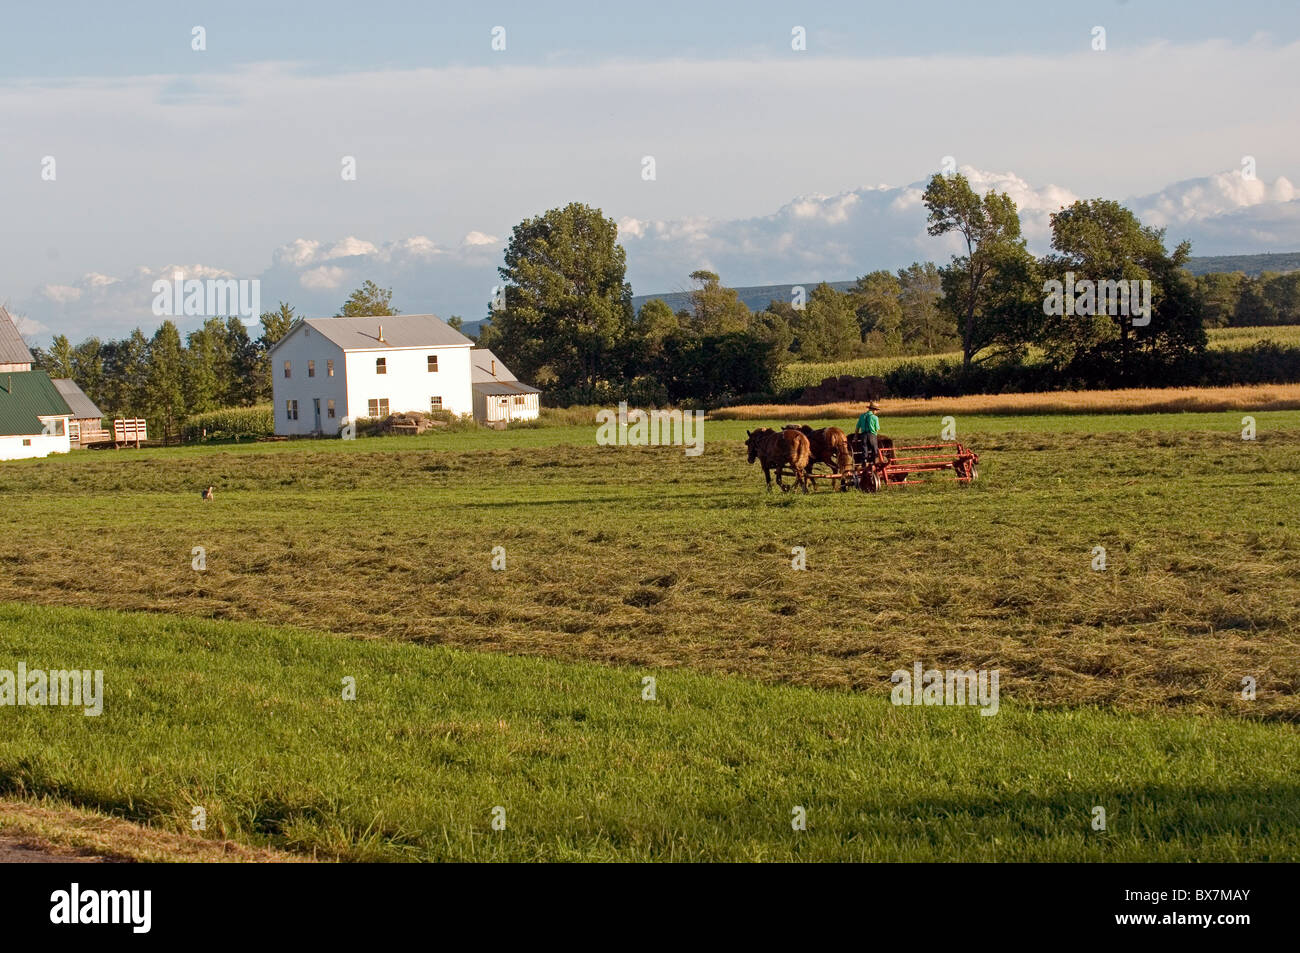 Amische Bauer im Feld auf Wagen von Pferden gezogen wird Stockfoto